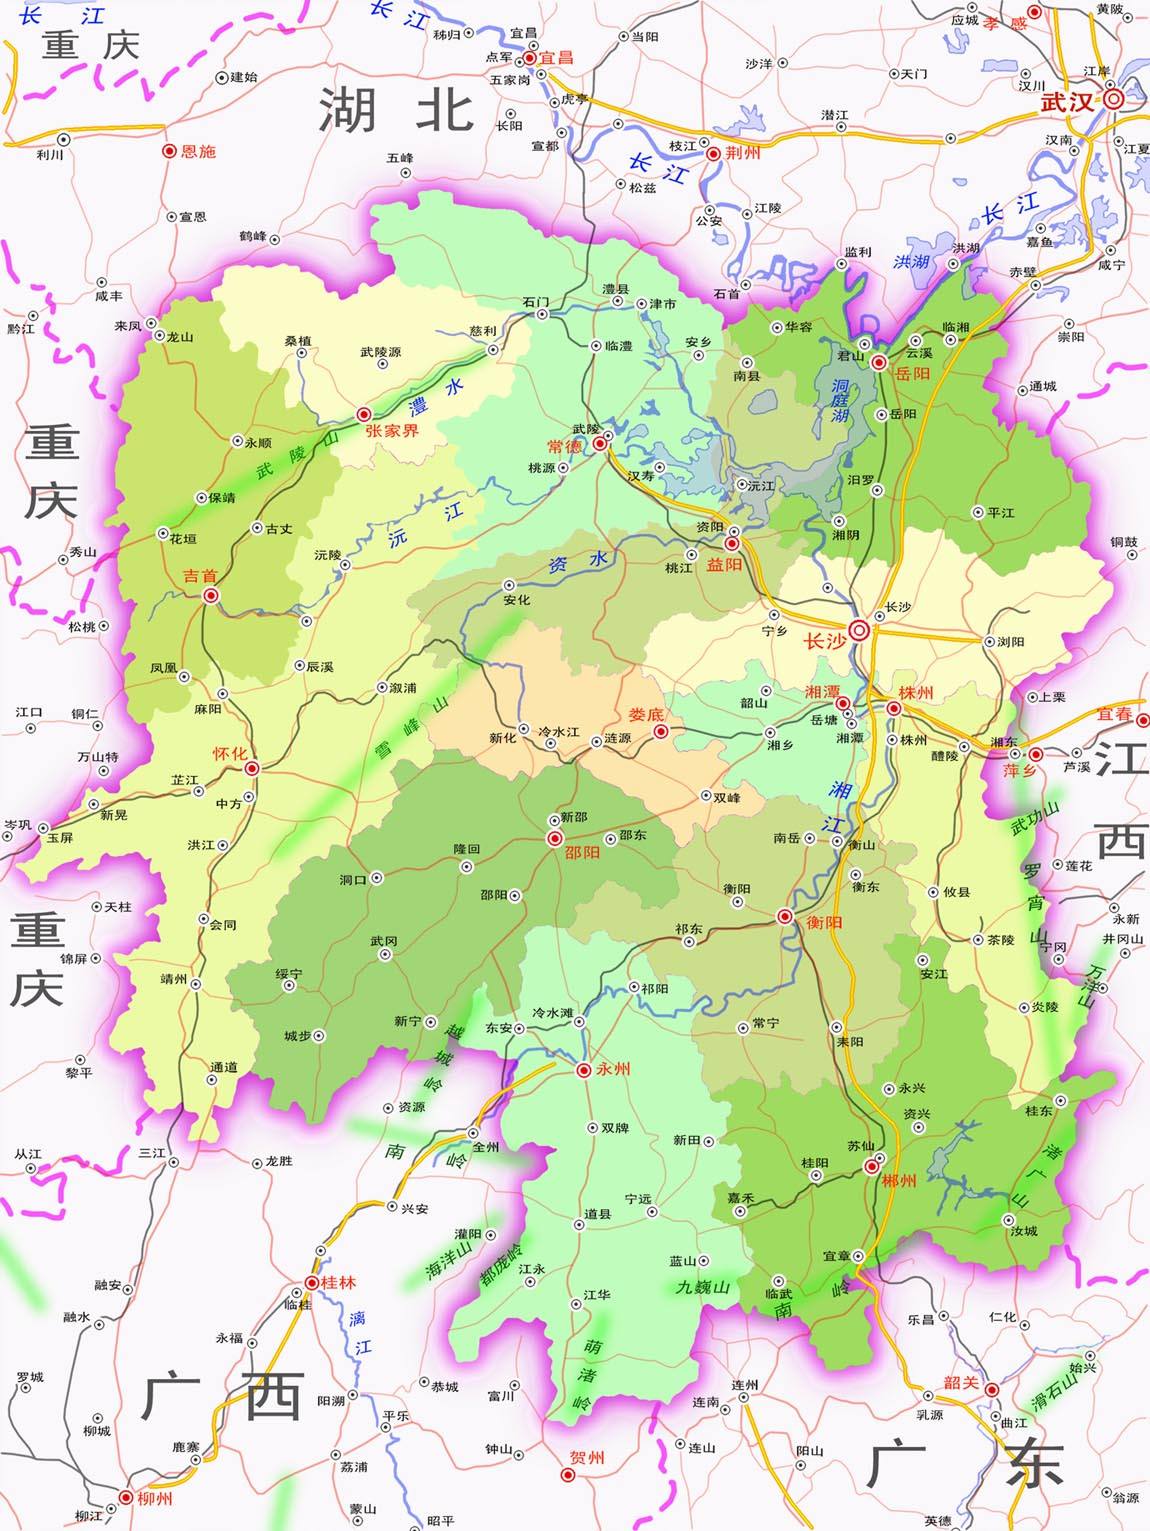 湖南省的十四个地区